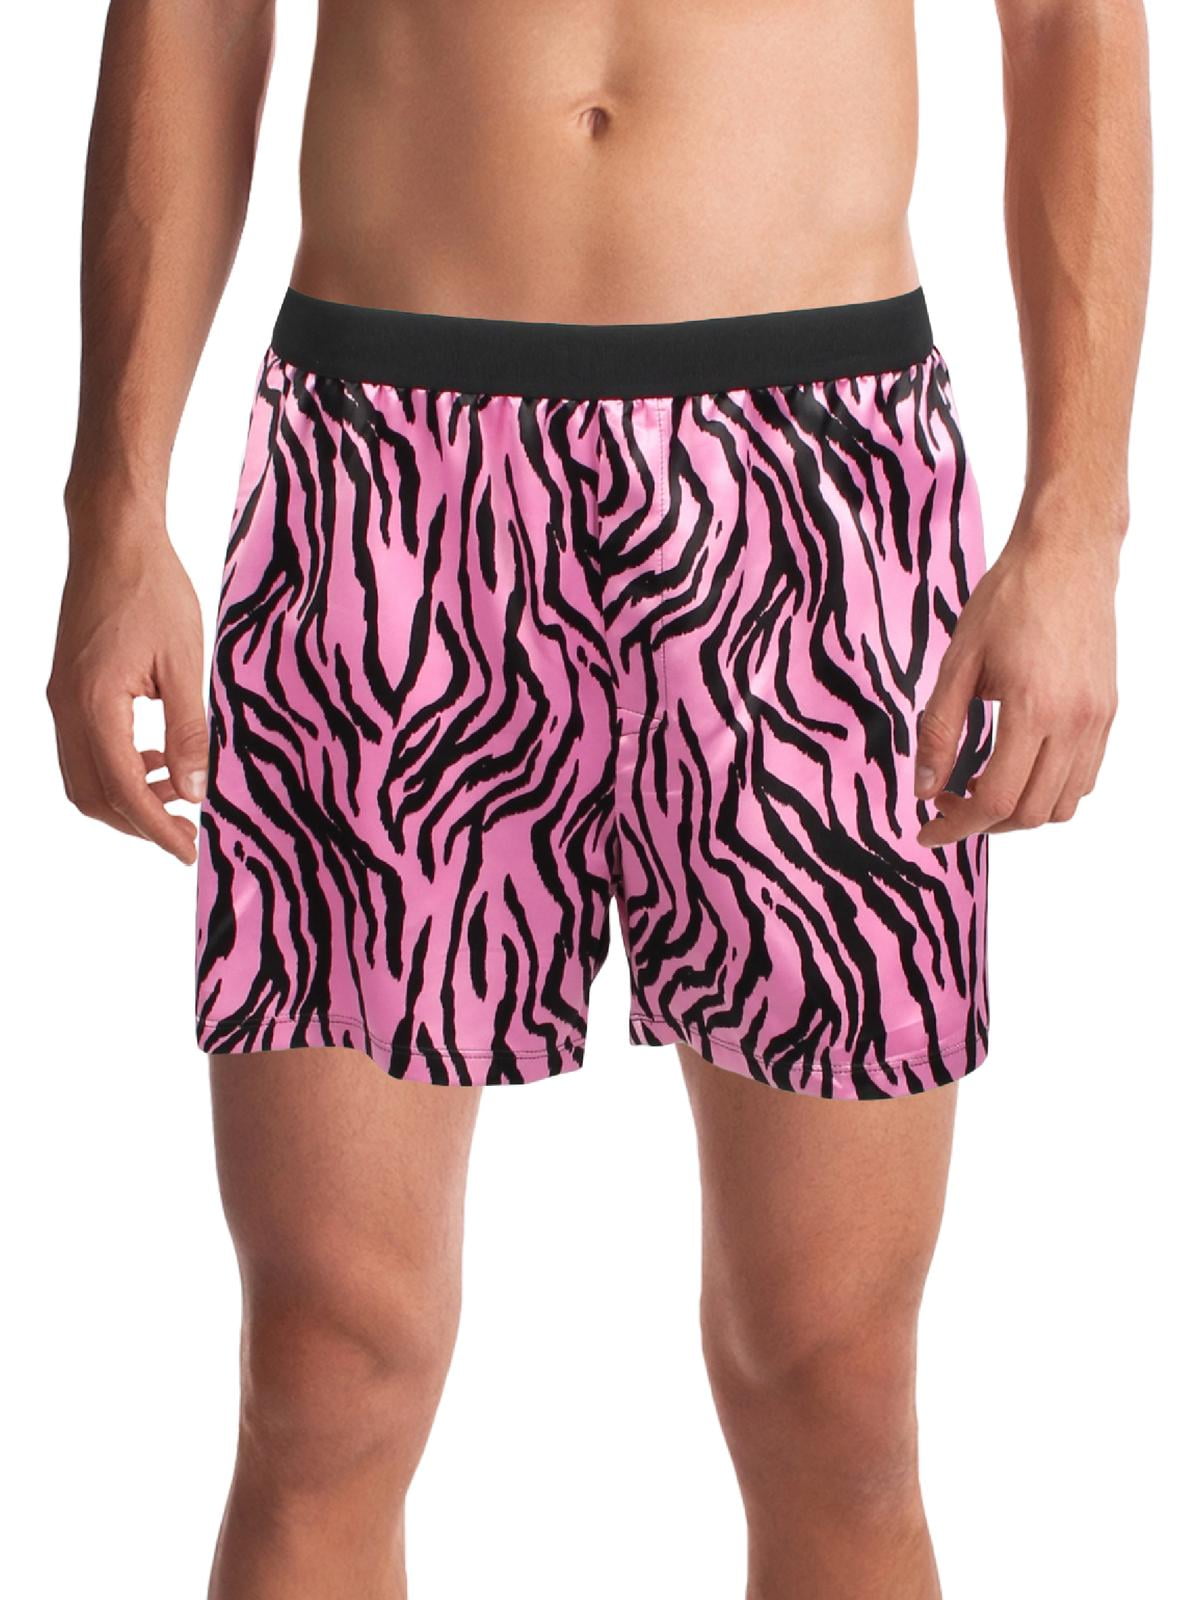 atoom In werkelijkheid katoen INC Mens Zebra Shorts Boxers - Walmart.com